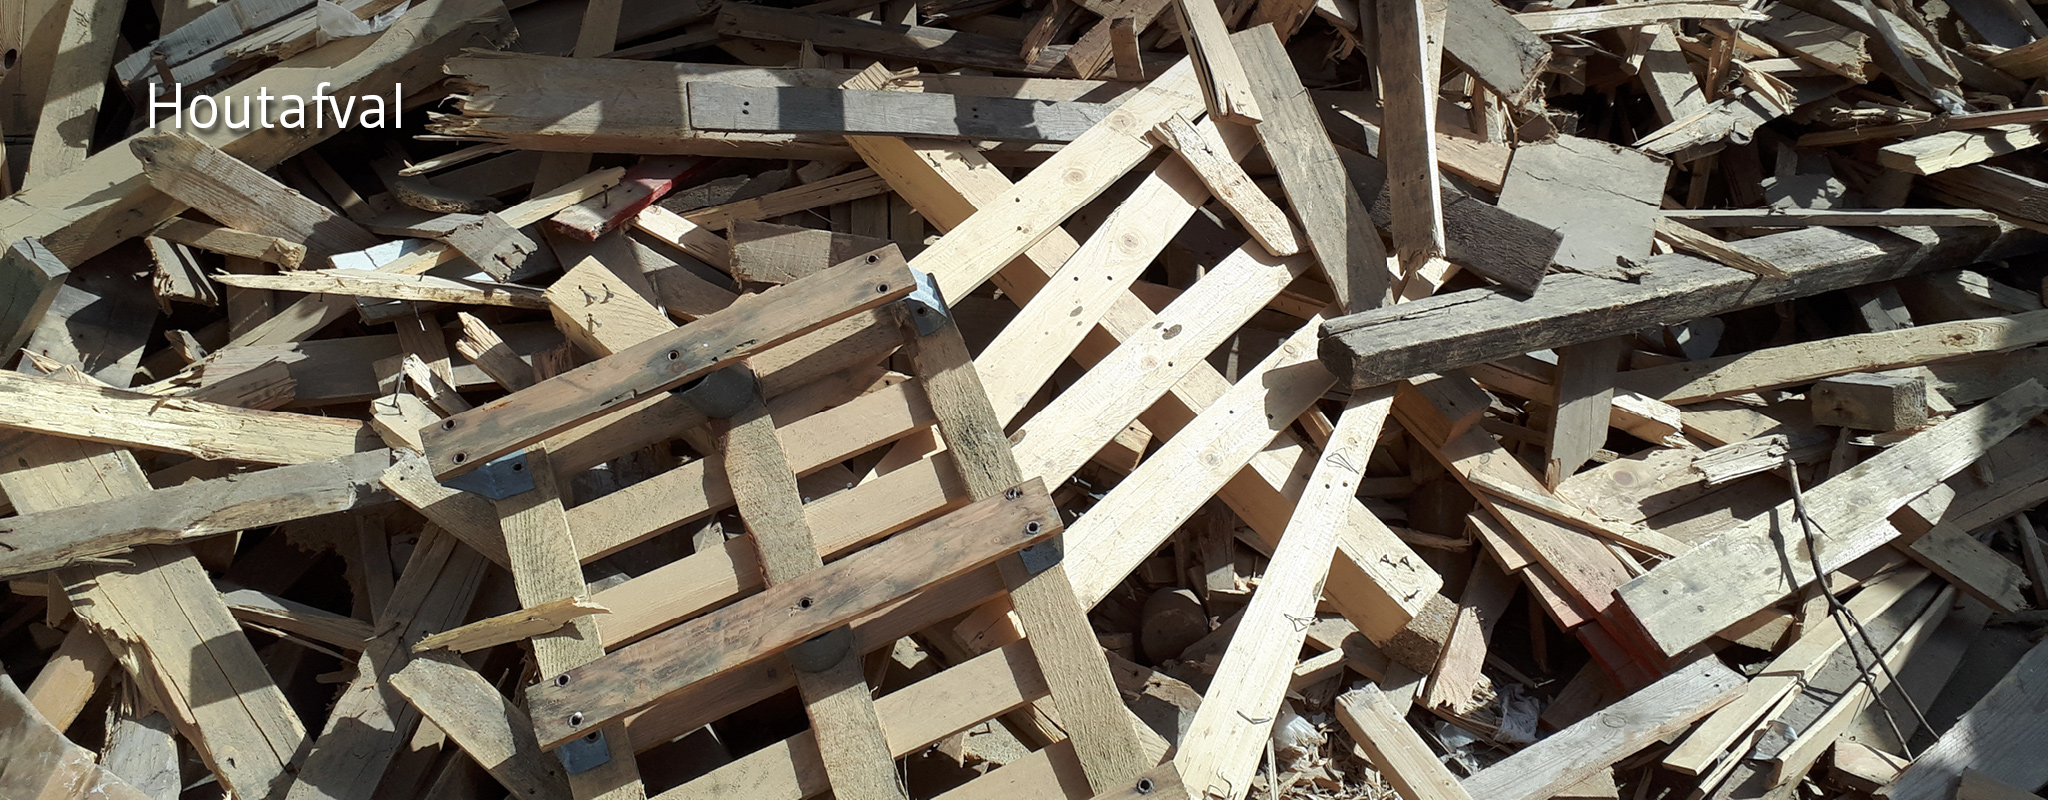 Oude palletten en houten balken klaar voor recyclage